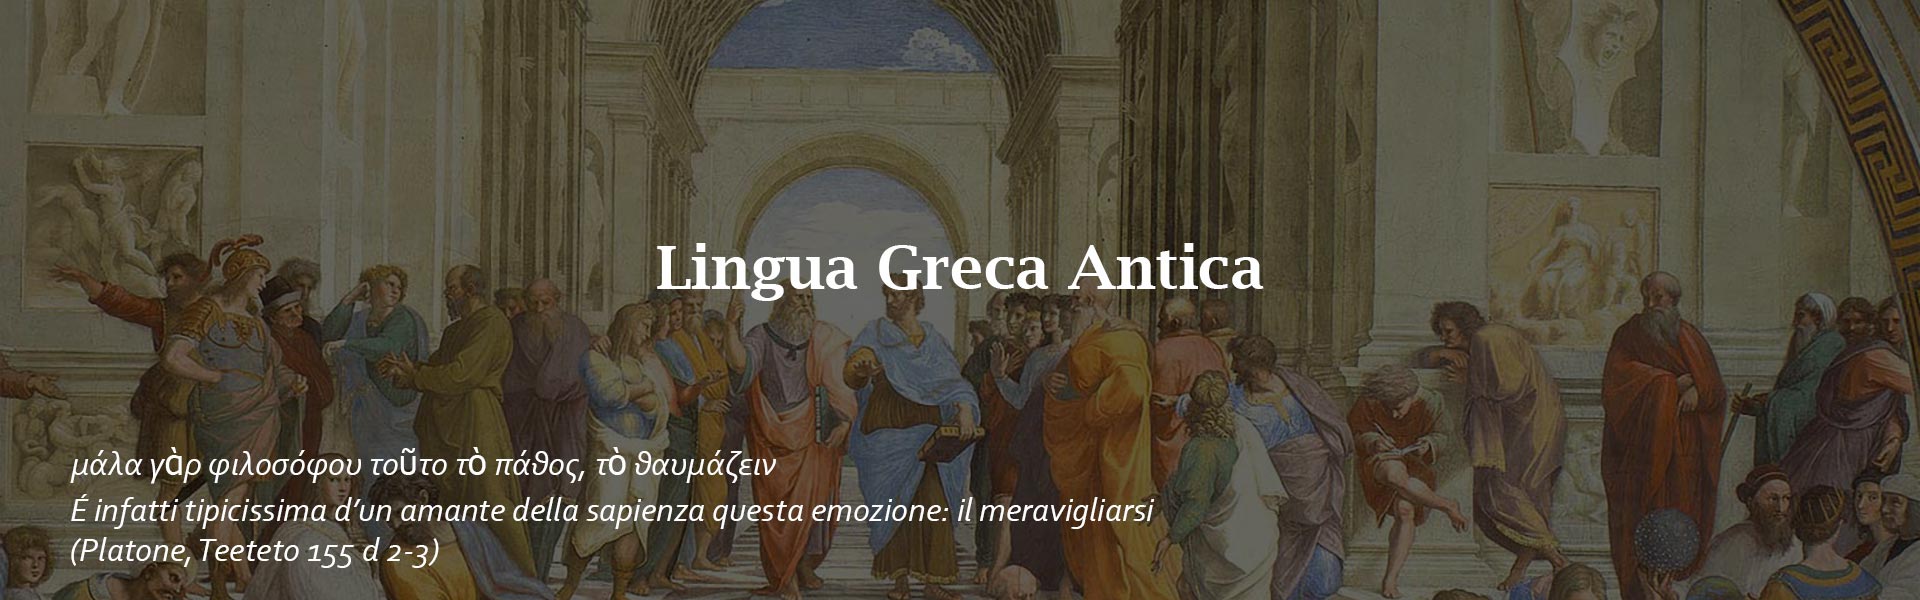 lingua-greco-antico-Alif